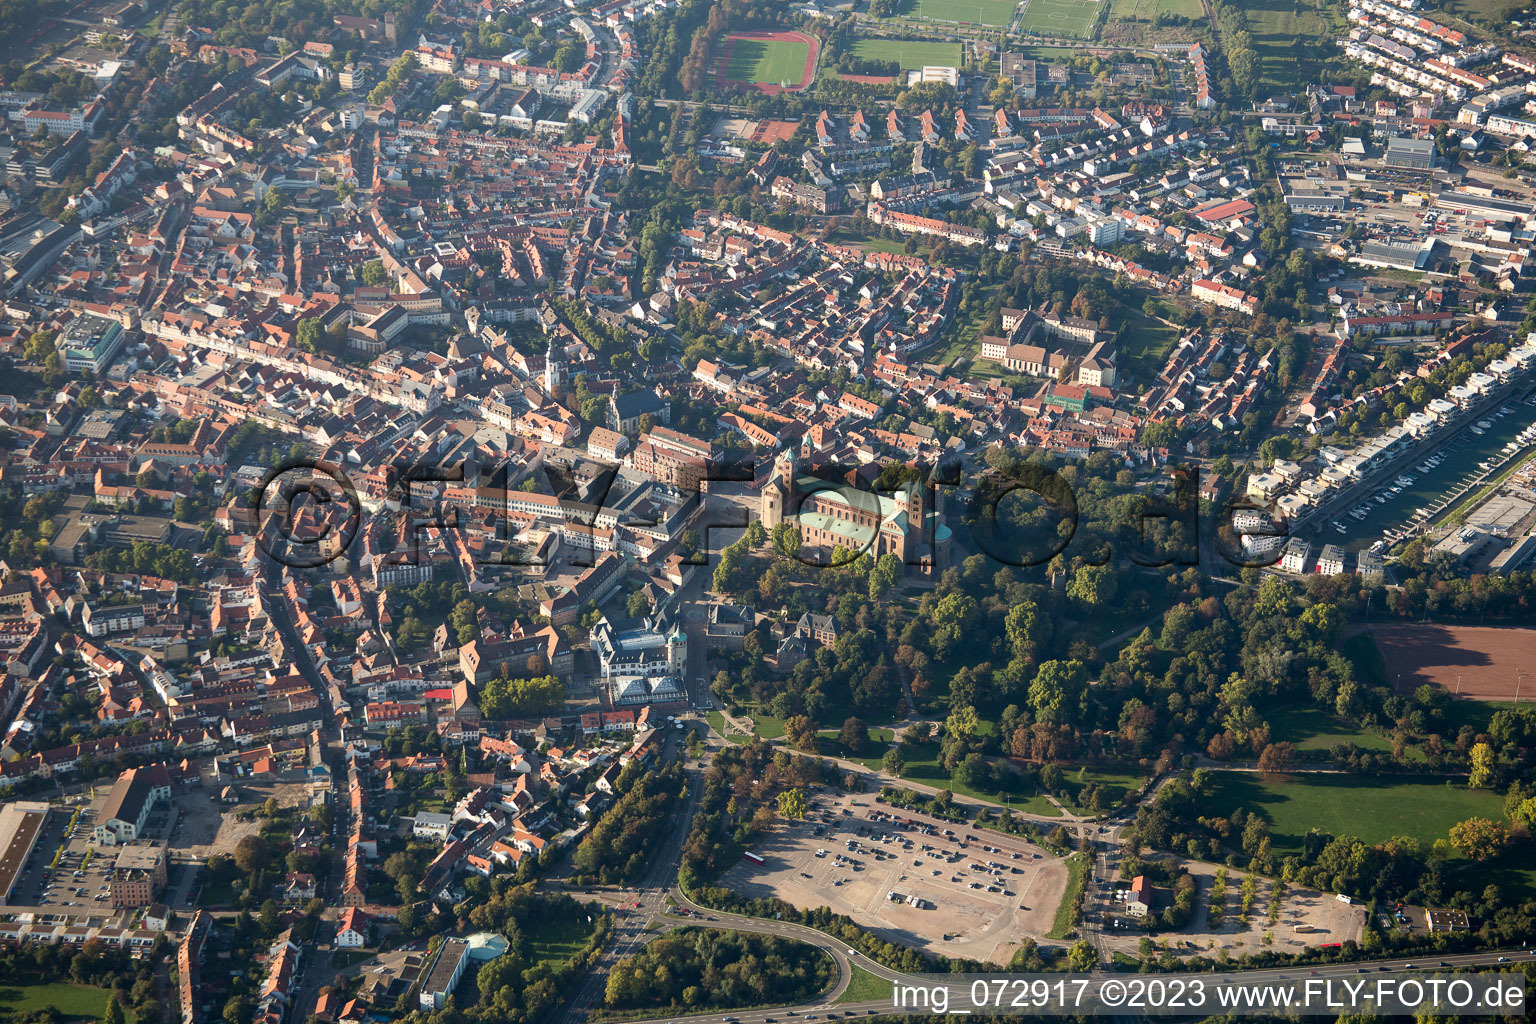 Speyer dans le département Rhénanie-Palatinat, Allemagne vu d'un drone